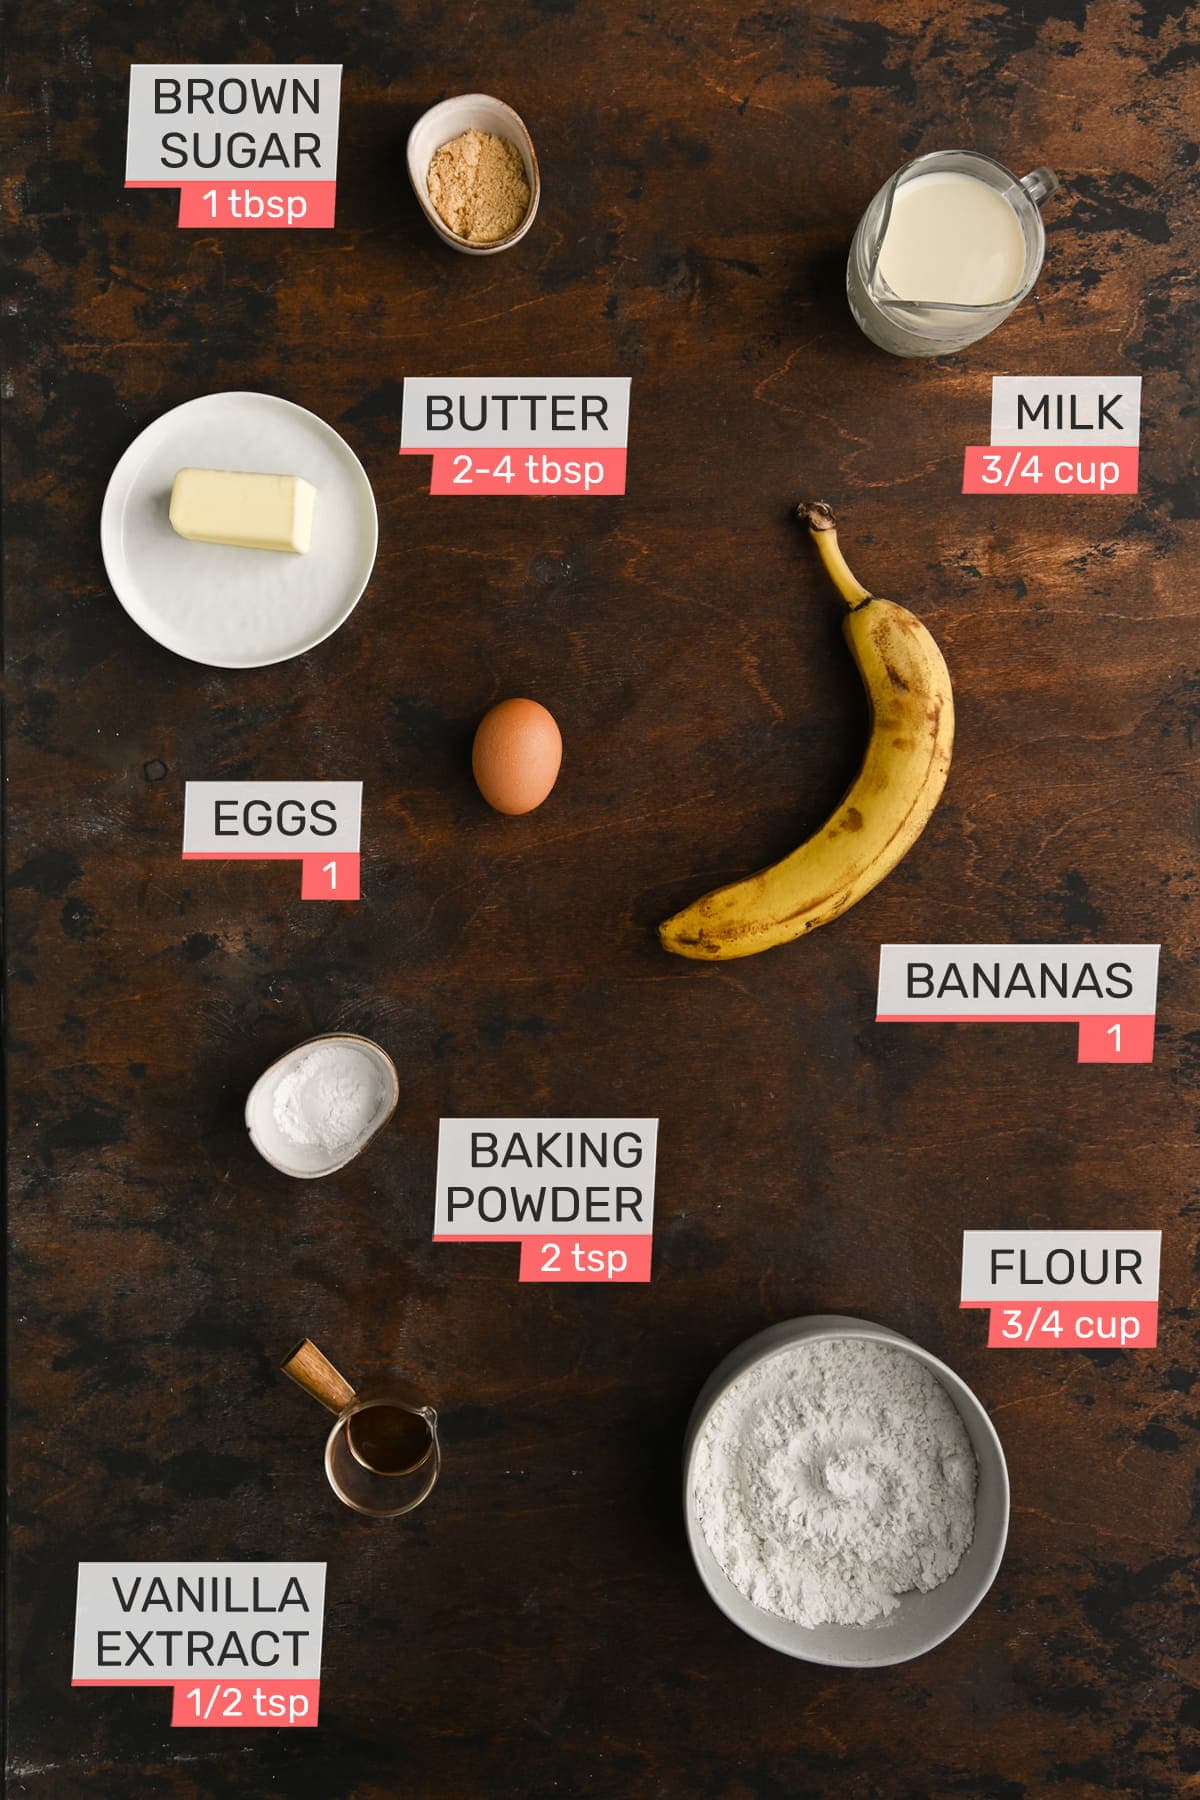 baking powder, brown sugar, egg, milk, flour, banana, and vanilla extract